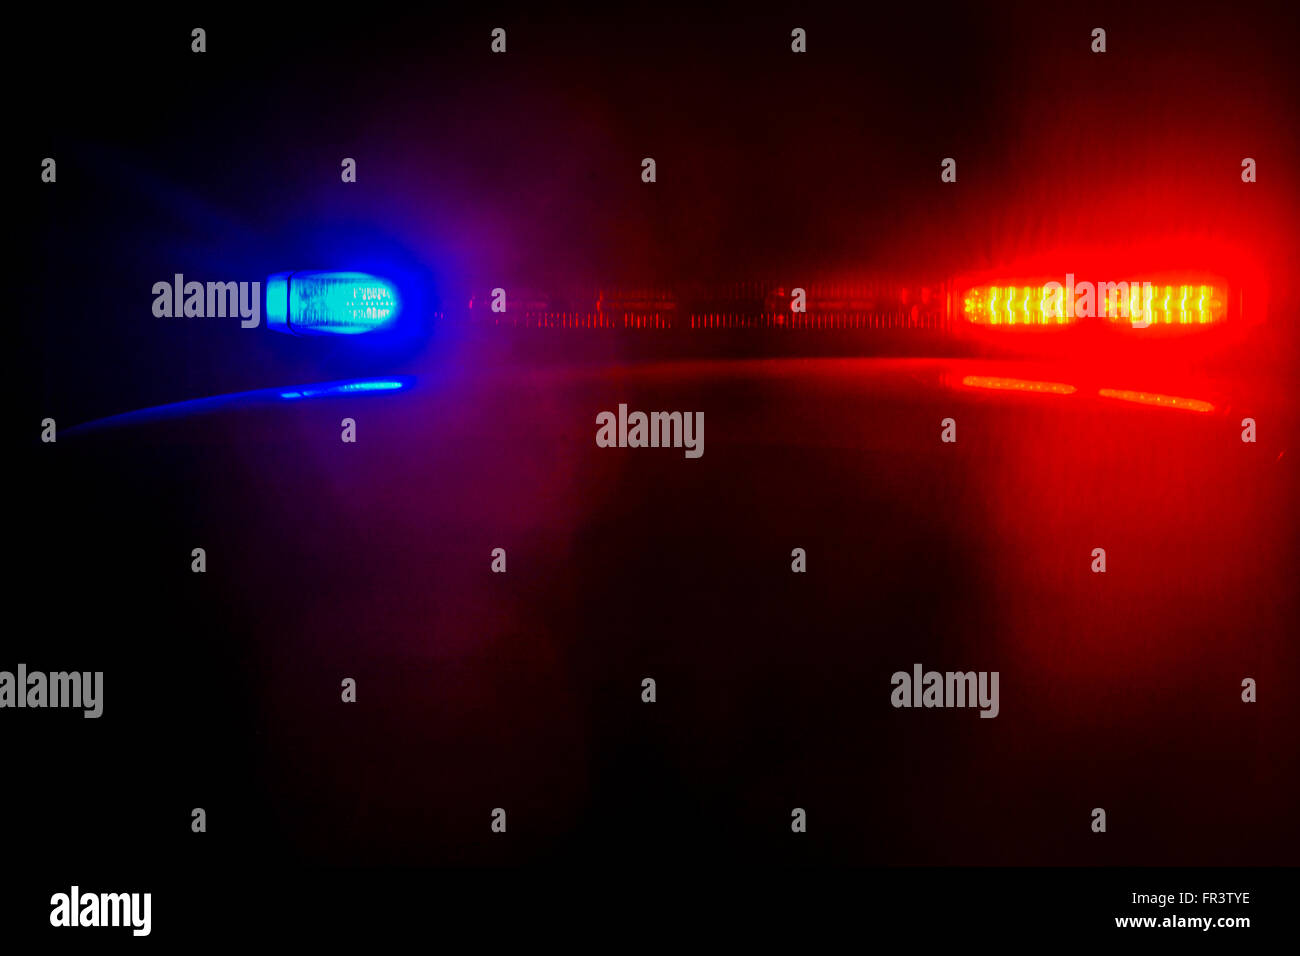 Polizei, Blaulicht, LED-Leuchten eines Polizeiautos Stockfotografie - Alamy